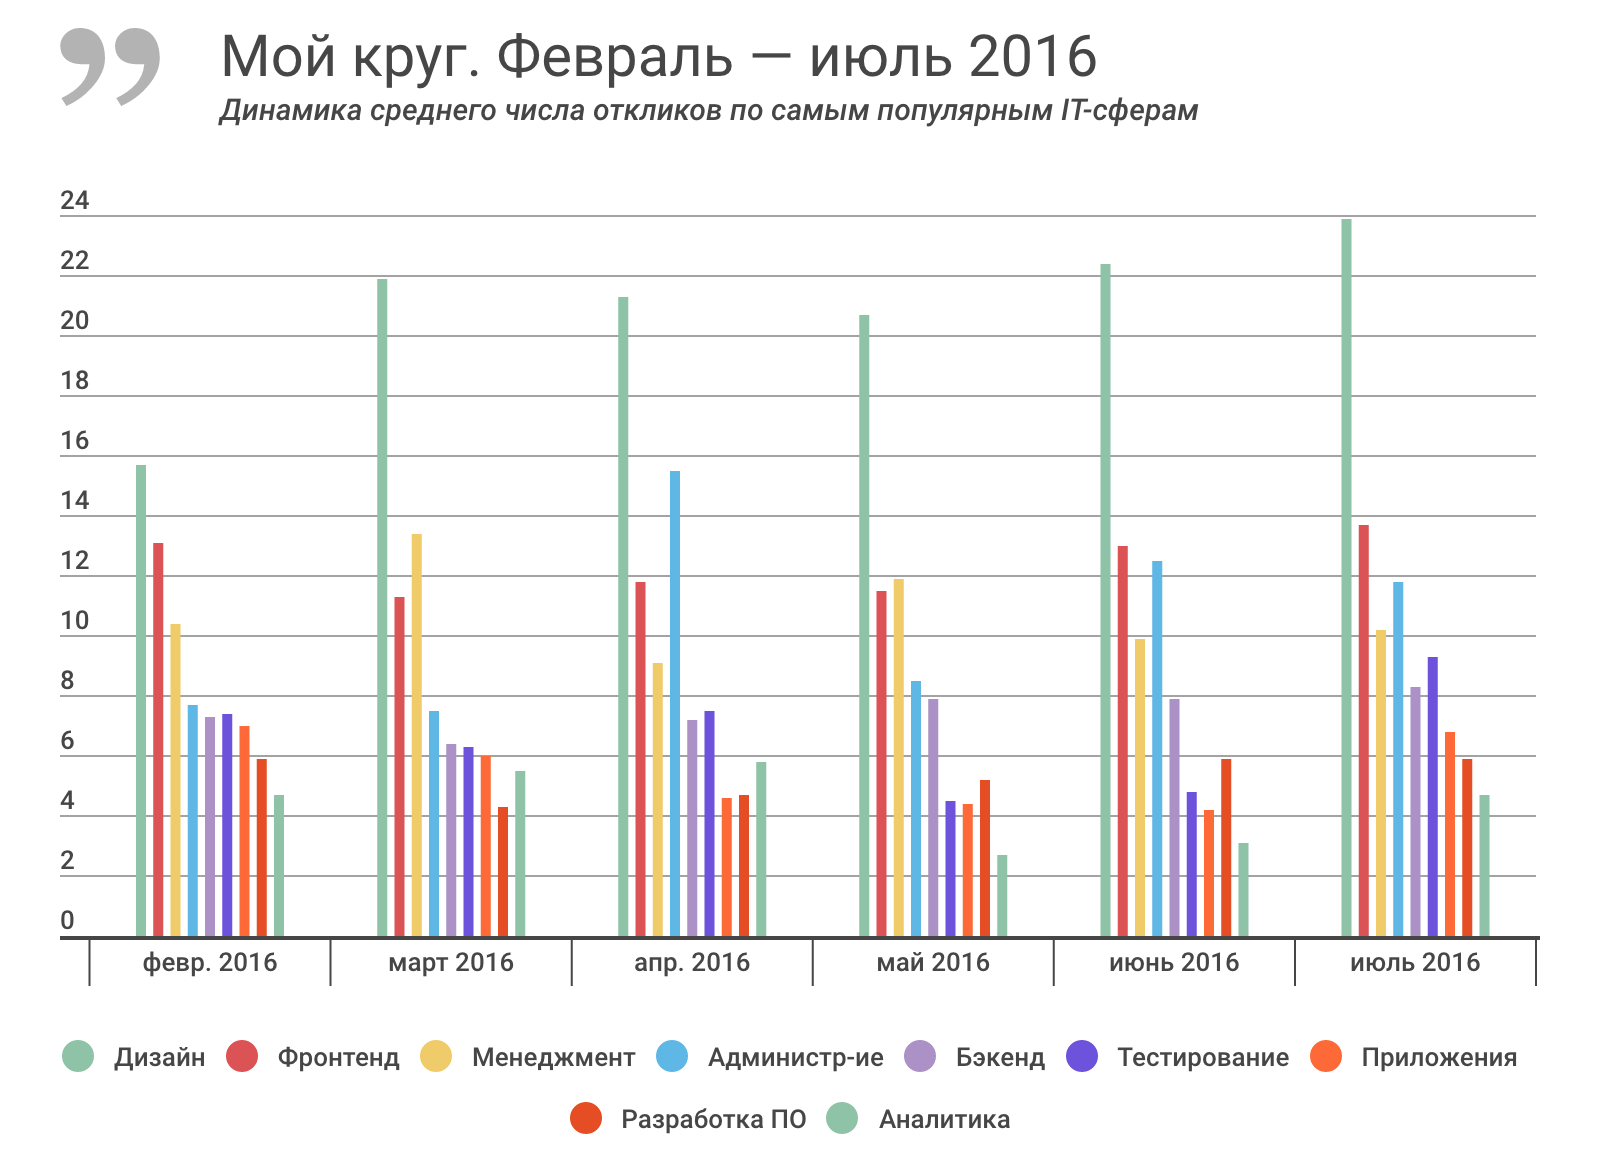 Отчет о результатах «Моего круга» за июль 2016, и самые популярные вакансии месяца - 2